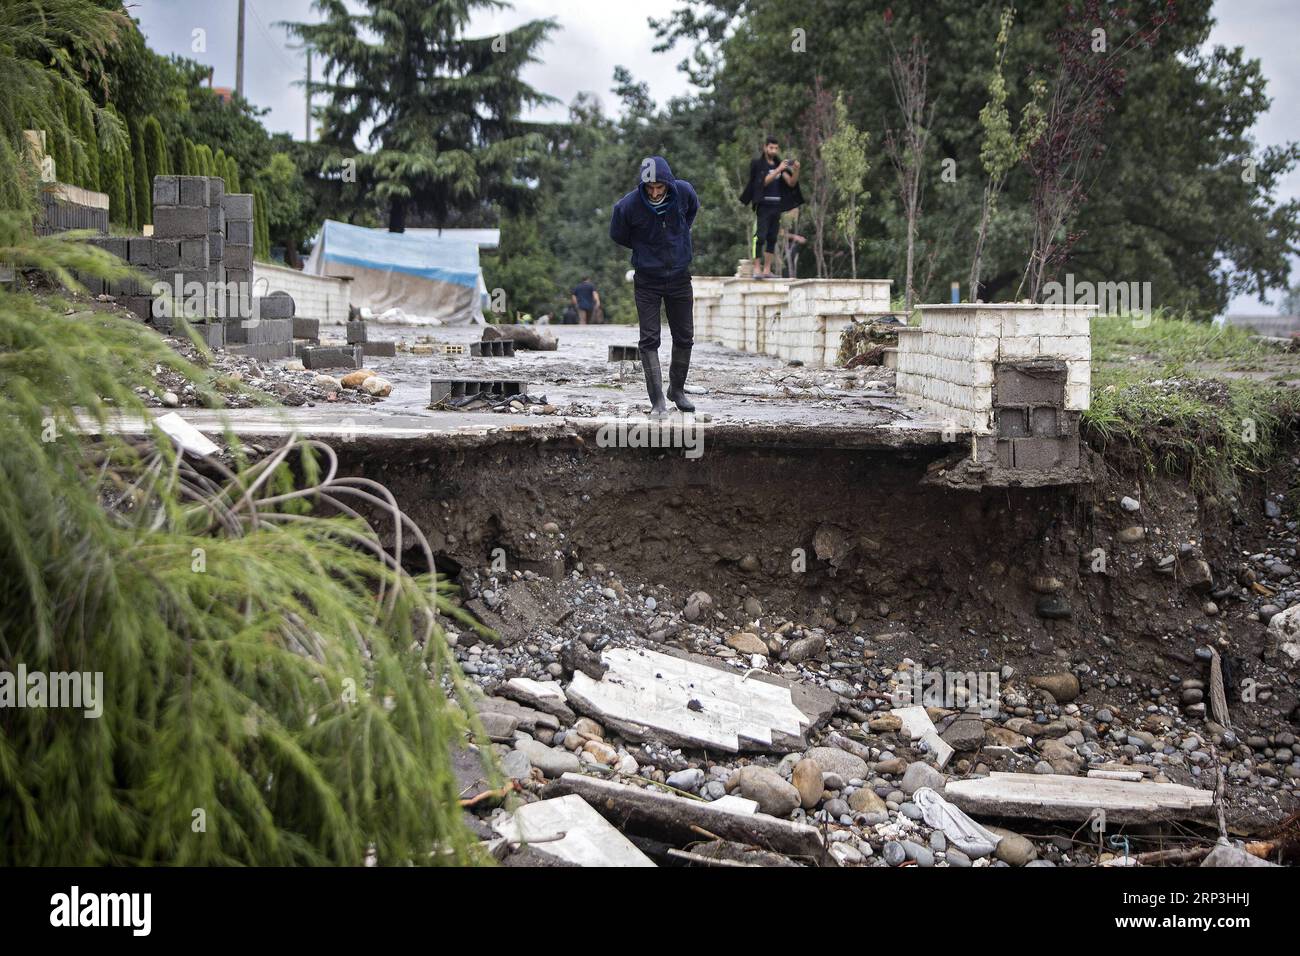 (181007) -- TONekabon, 7 octobre 2018 -- Un homme regarde un bâtiment détruit après une inondation causée par de fortes pluies dans la ville de Tonekabon, dans la province de Mazandaran, au nord de l'Iran, le 6 octobre 2018. Les fortes pluies dans les régions nord et nord-ouest de l'Iran au cours des deux derniers jours ont coûté la vie à au moins sept personnes, a rapporté samedi l'agence de presse semi-officielle ISNA. (dtf) IRAN-TONEKABON-FLOOD AhmadxHalabisaz PUBLICATIONxNOTxINxCHN Banque D'Images